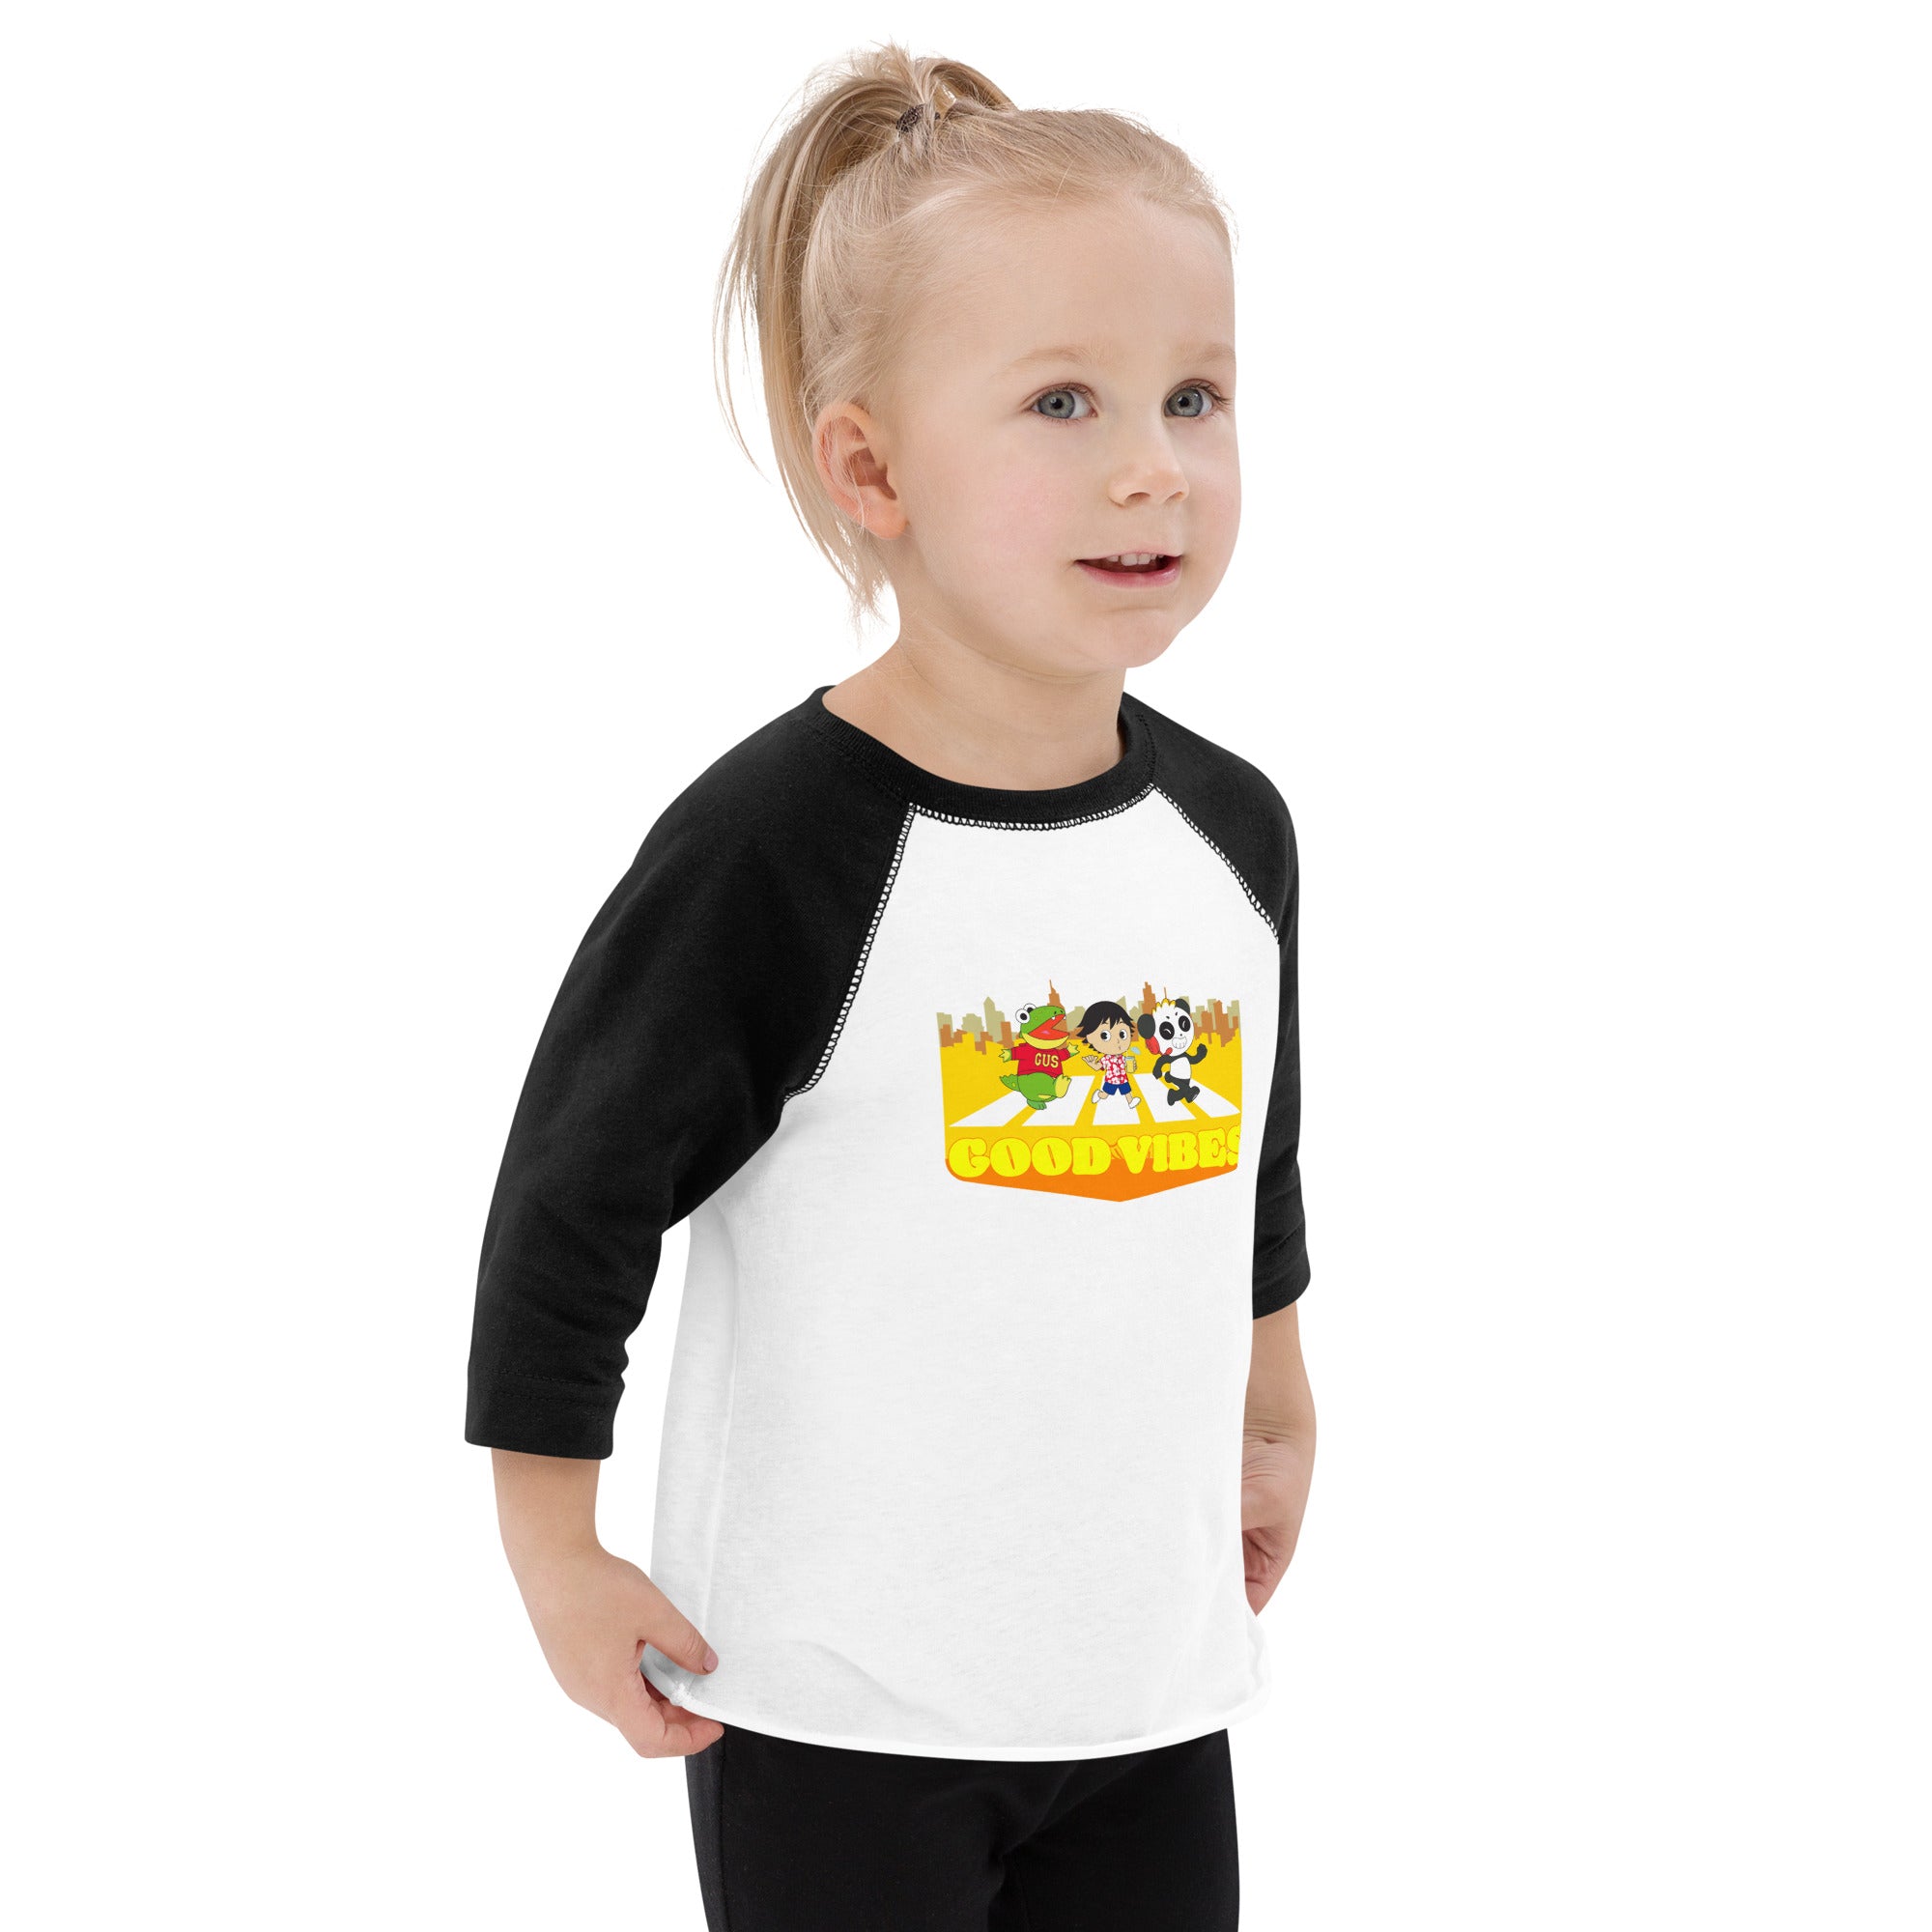 White Black Ryan's World Toddler Good Vibes Baseball Shirt